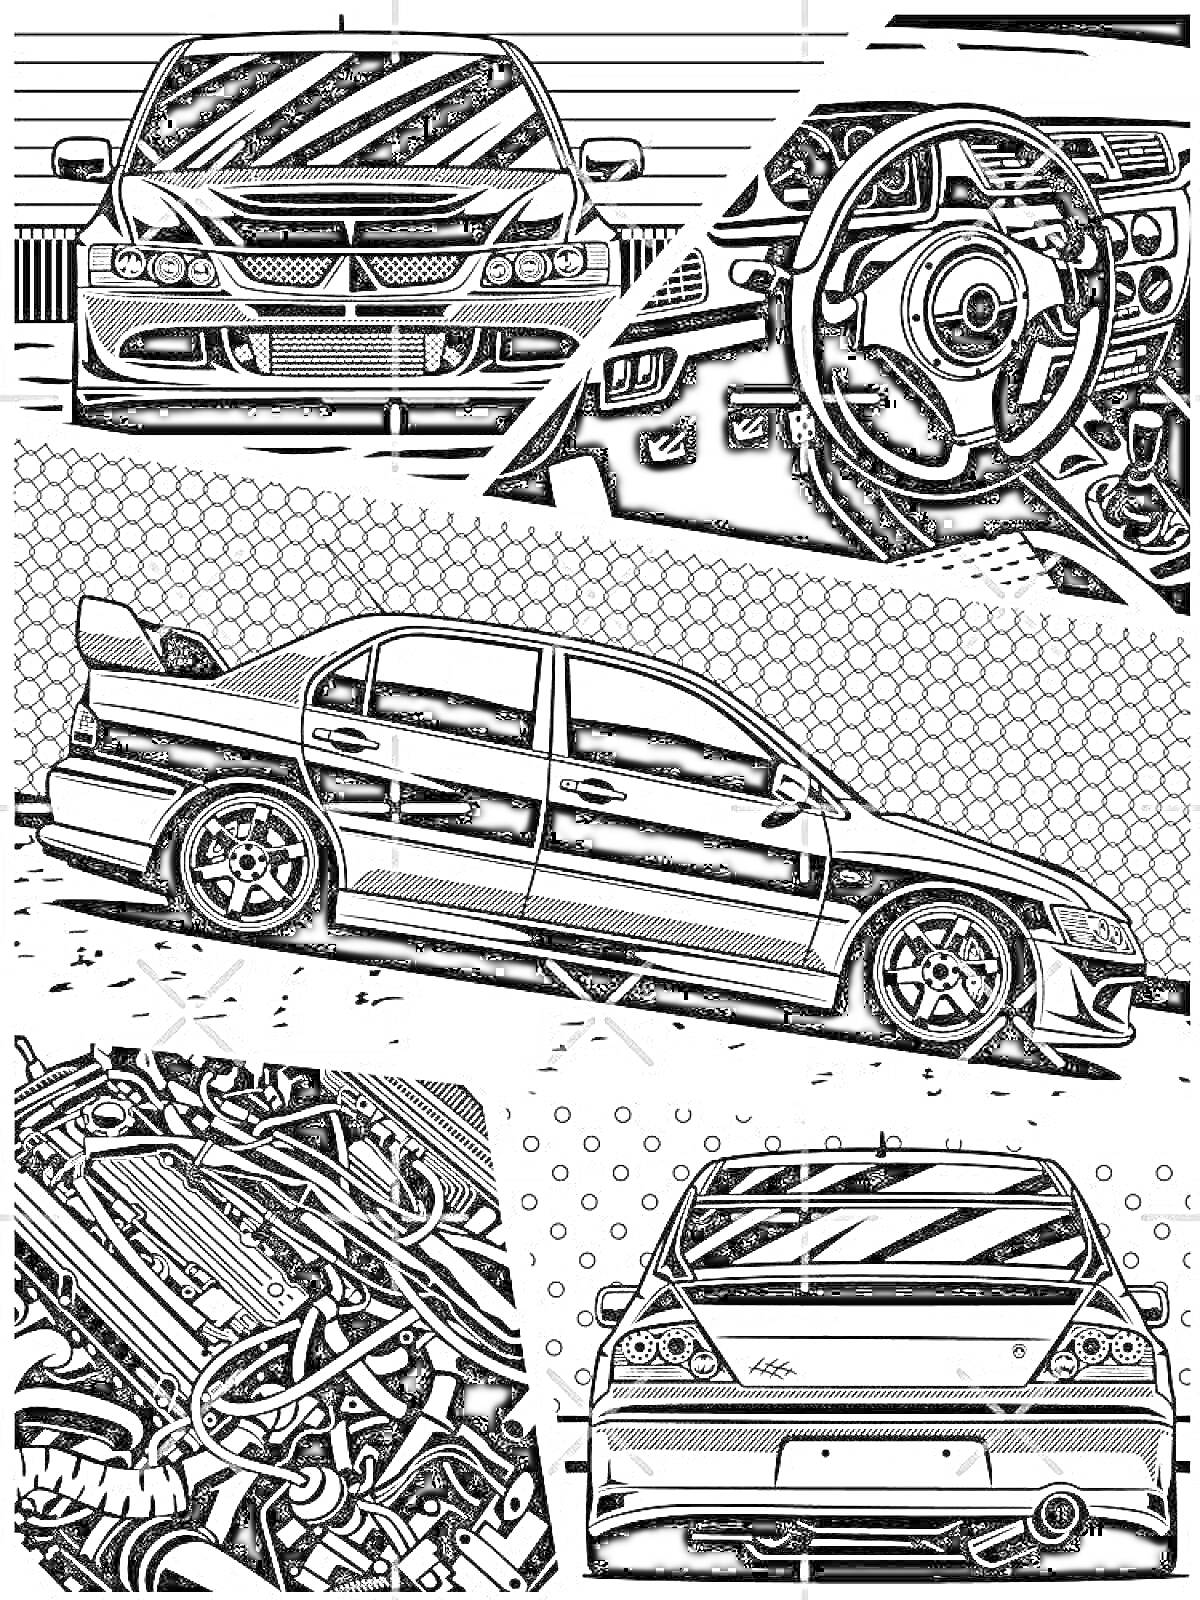 Раскраска Раскраска с изображением JDM автомобиля с видом спереди, салоном, сбоку, мотором и сзади